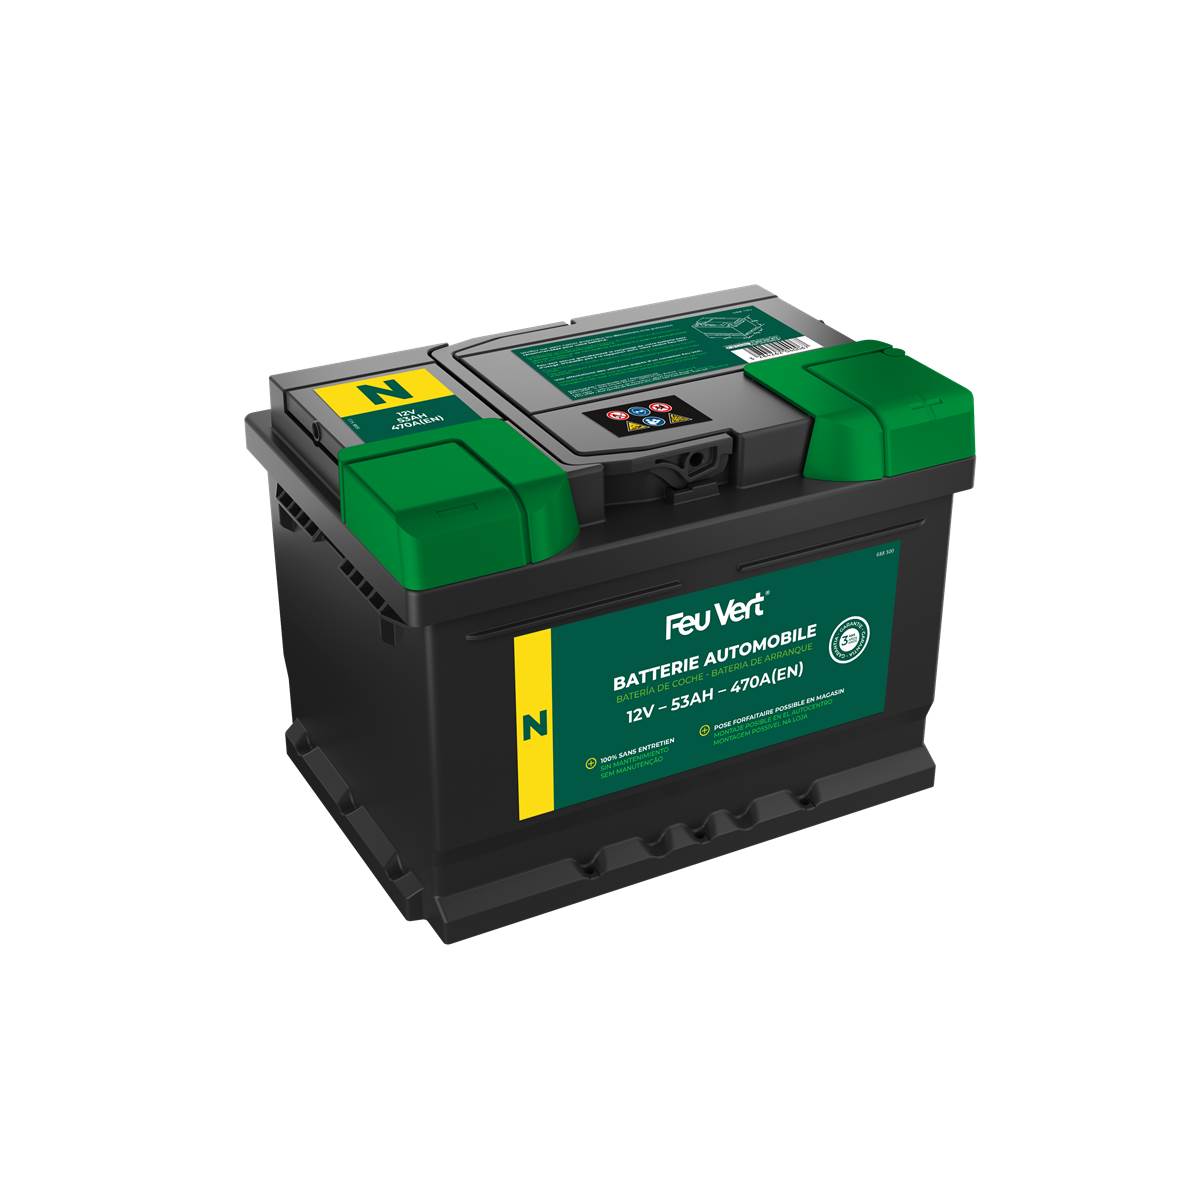 Batterie Voiture Feu Vert N - 53ah / 470a - 12v